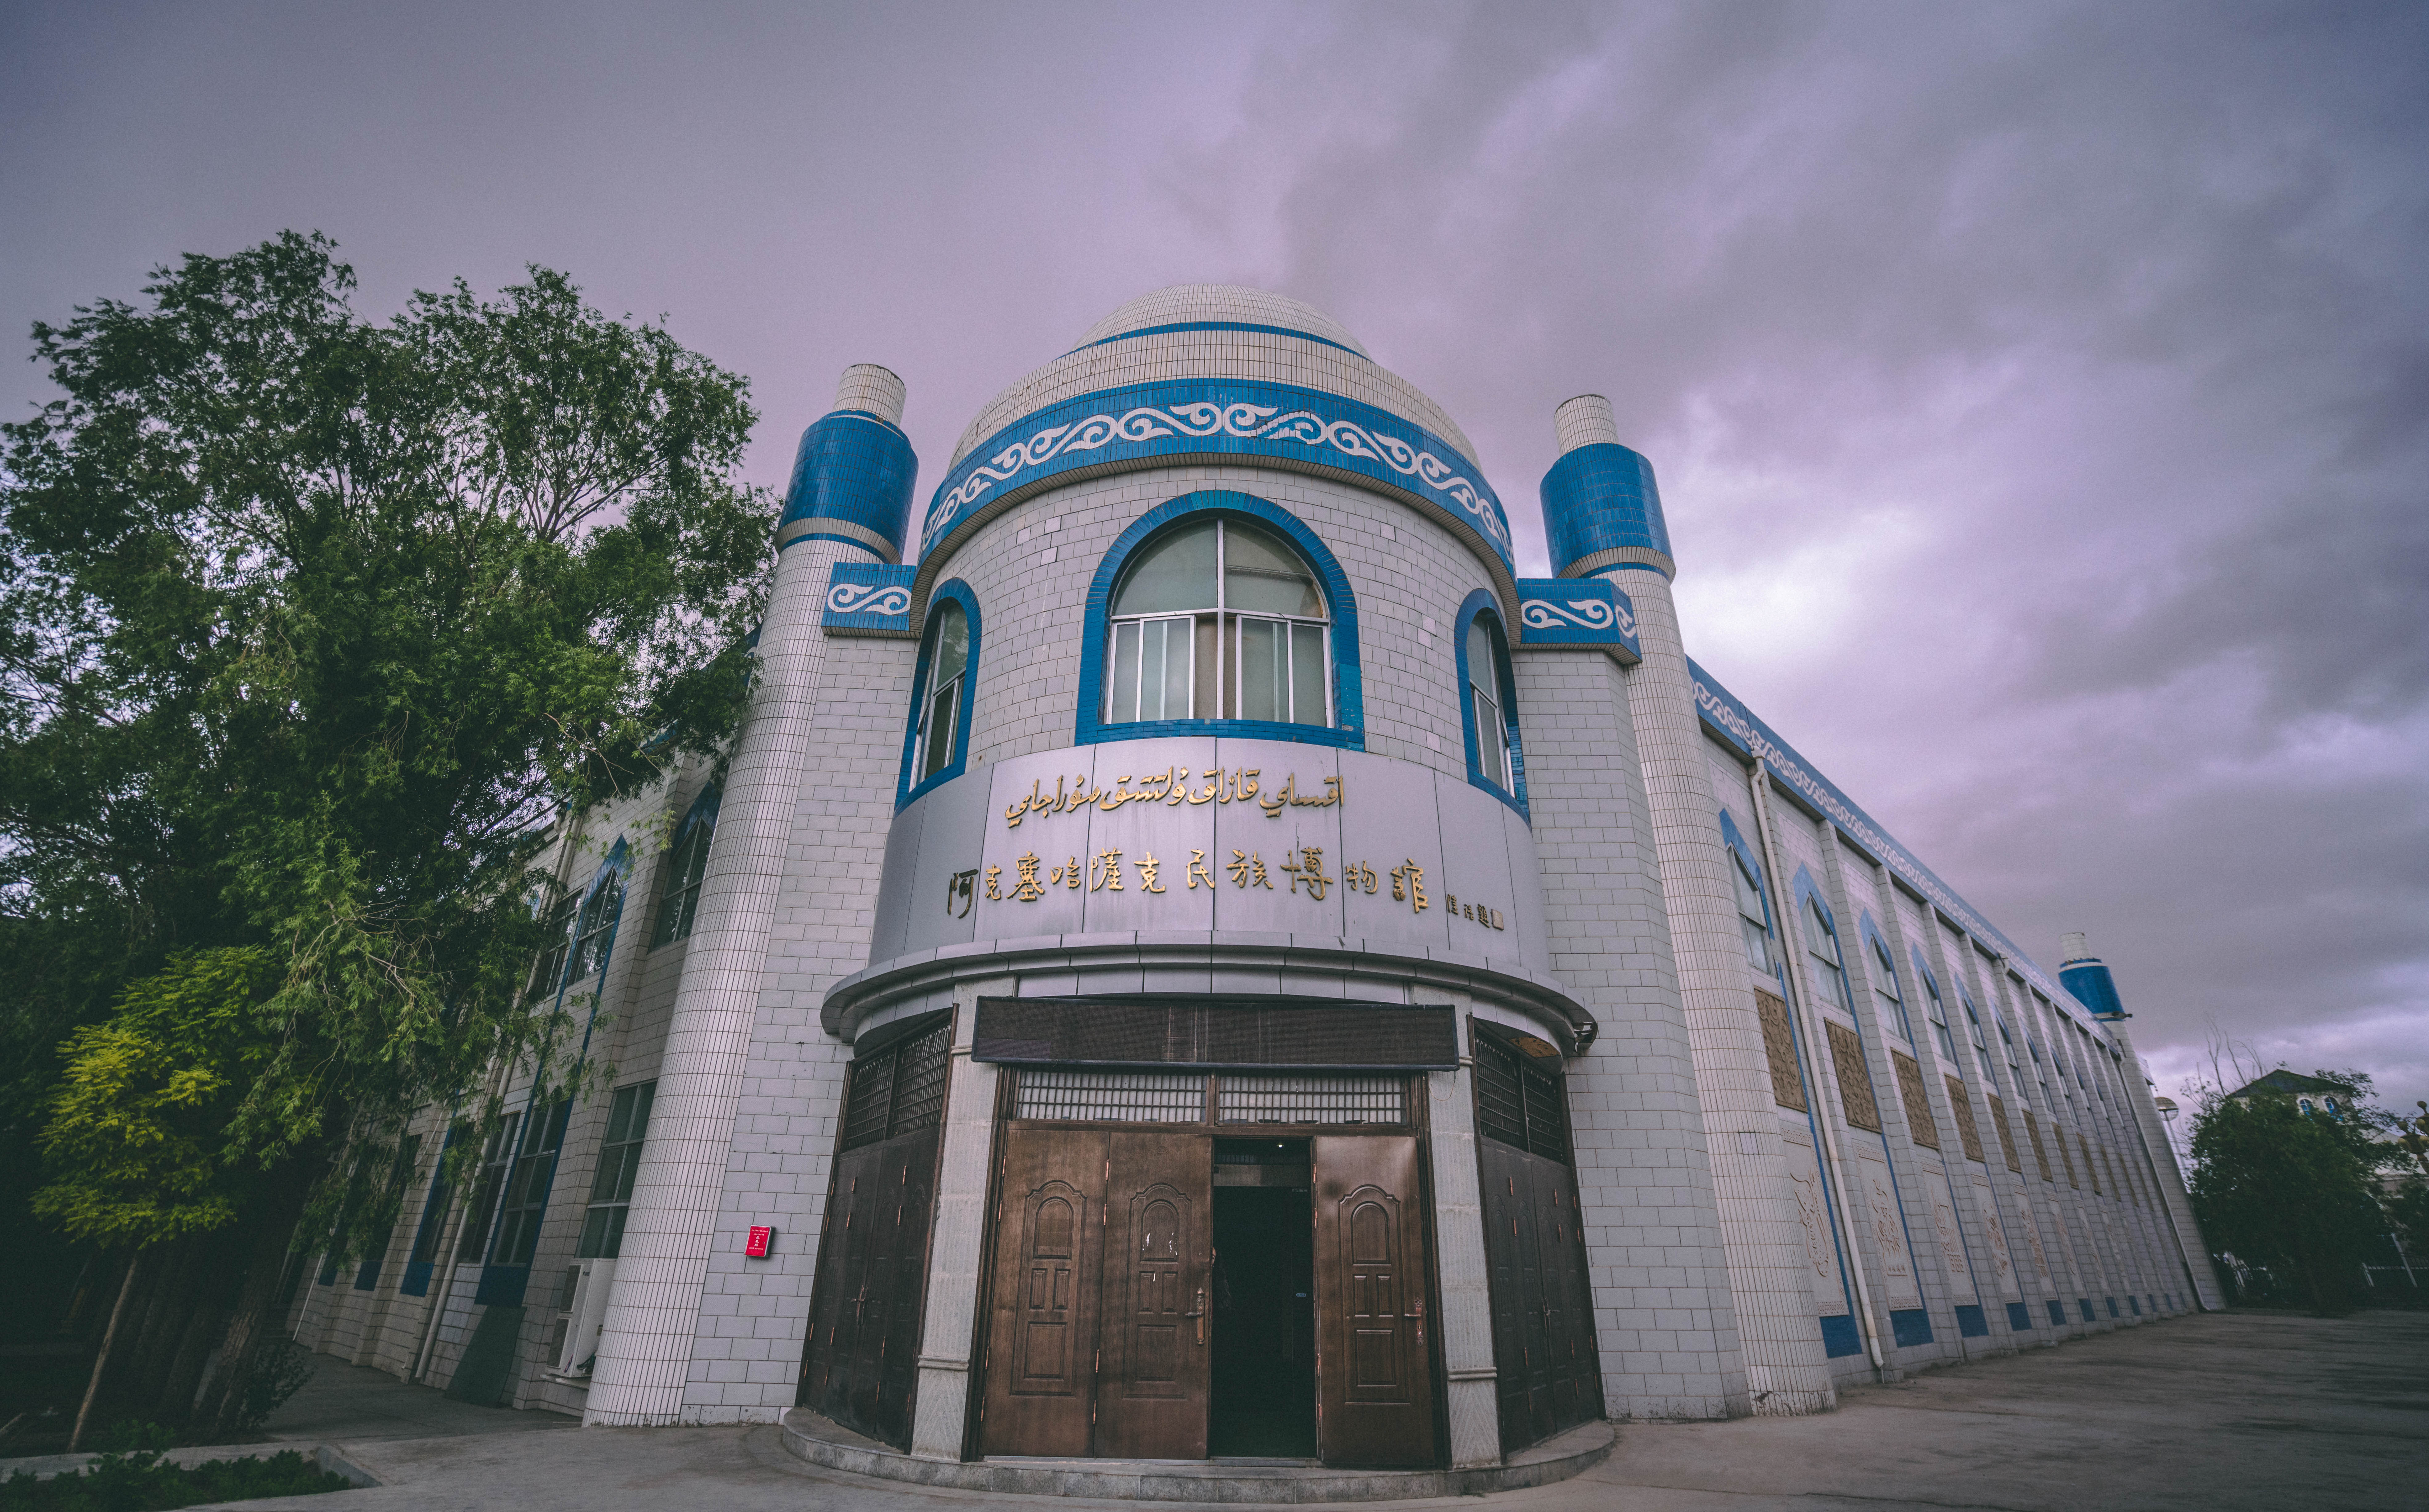 哈萨克族建筑特色图片